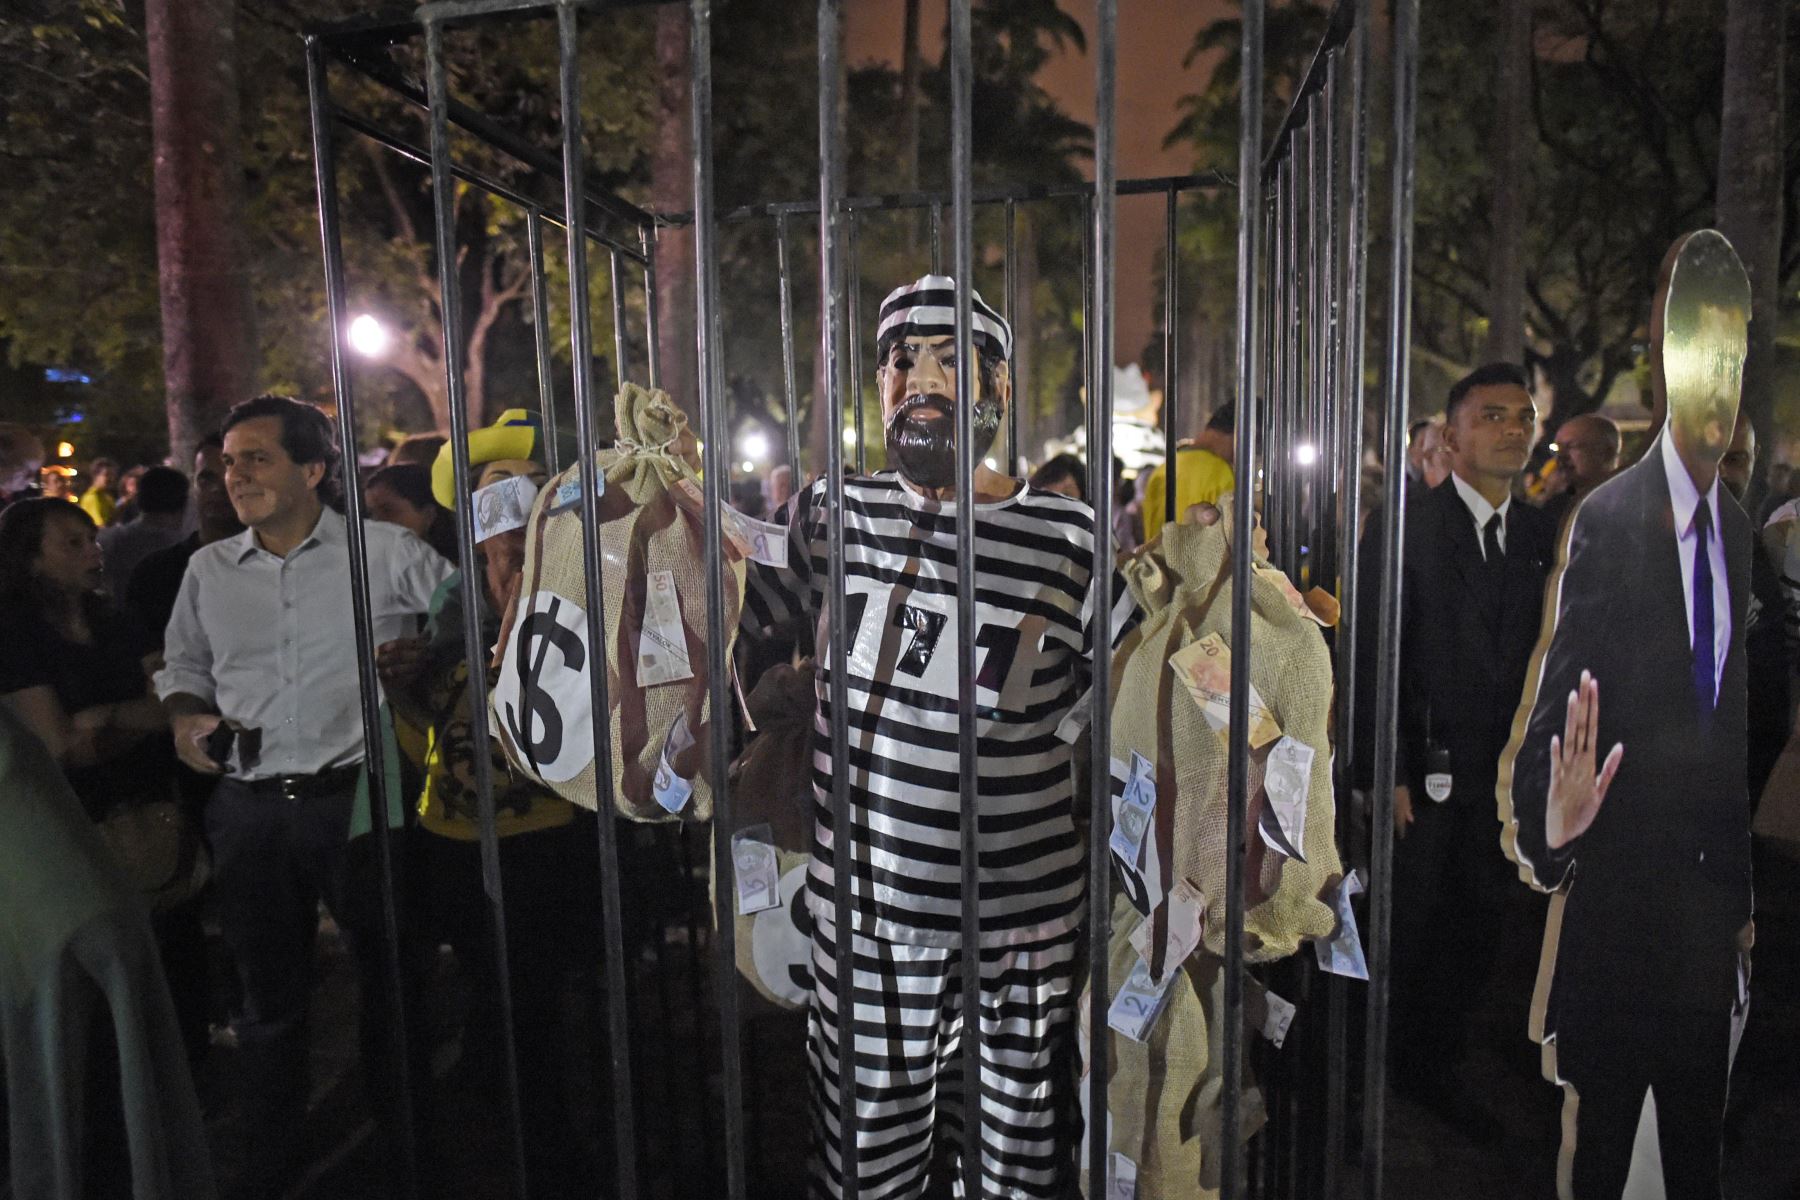 Manifestantes contra el expresidente brasileño Luiz Inácio Lula da Silva convocan una manifestación para exigir su encarcelamiento en Sao Paulo, Brasil, el 3 de abril de 2018. Foto: AFP.